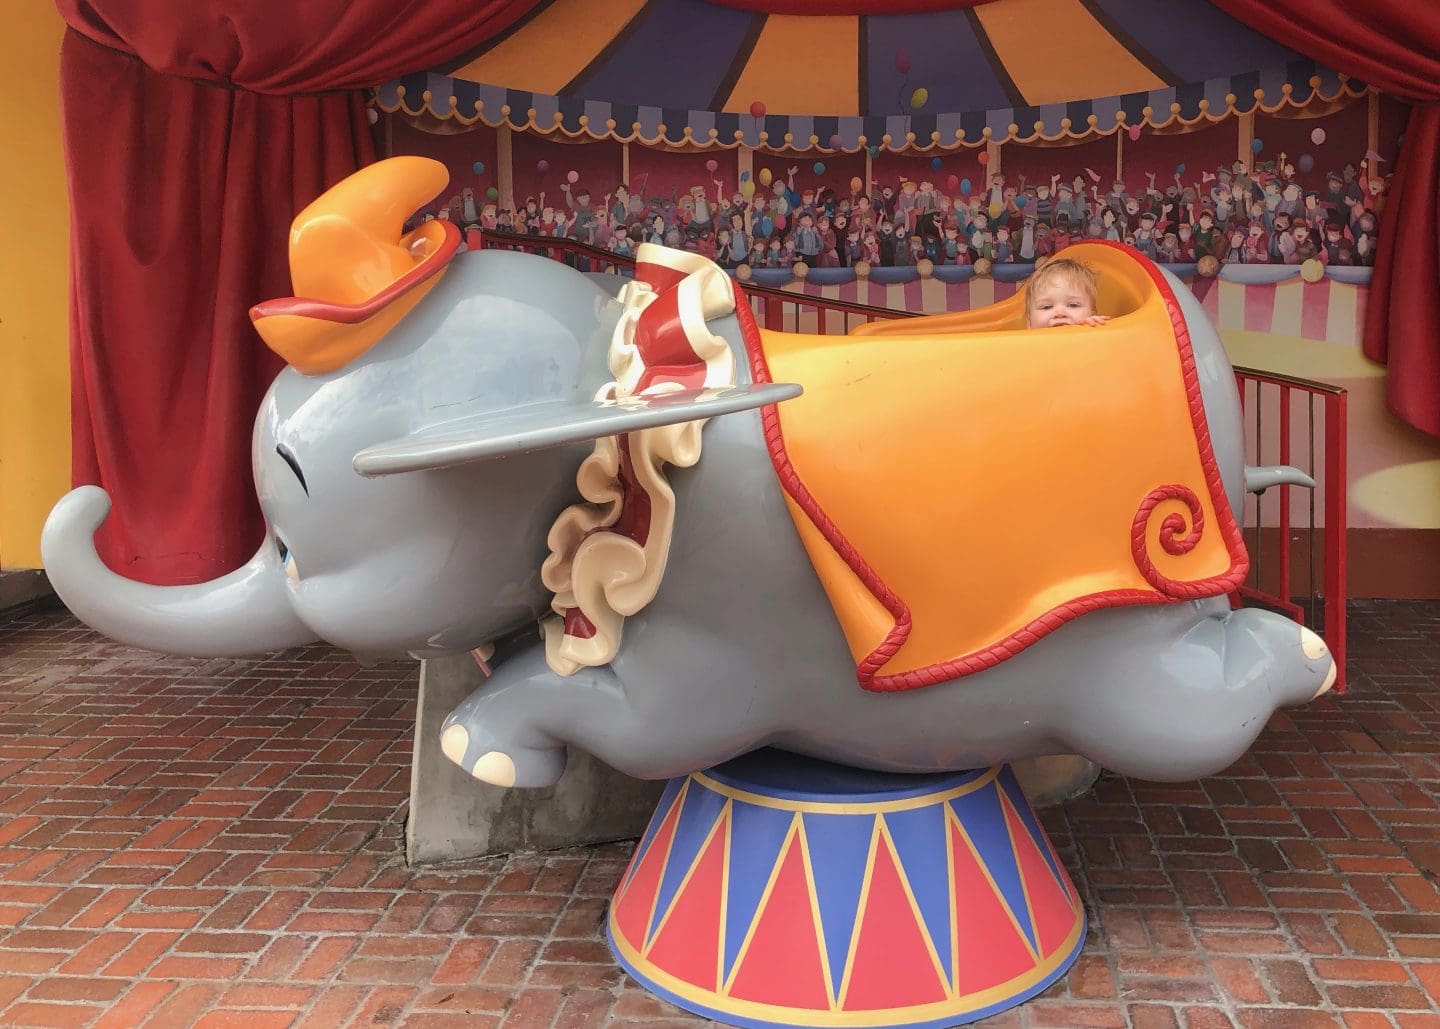 dumbo at magic kingdom fantasyland at Disney World with toddler